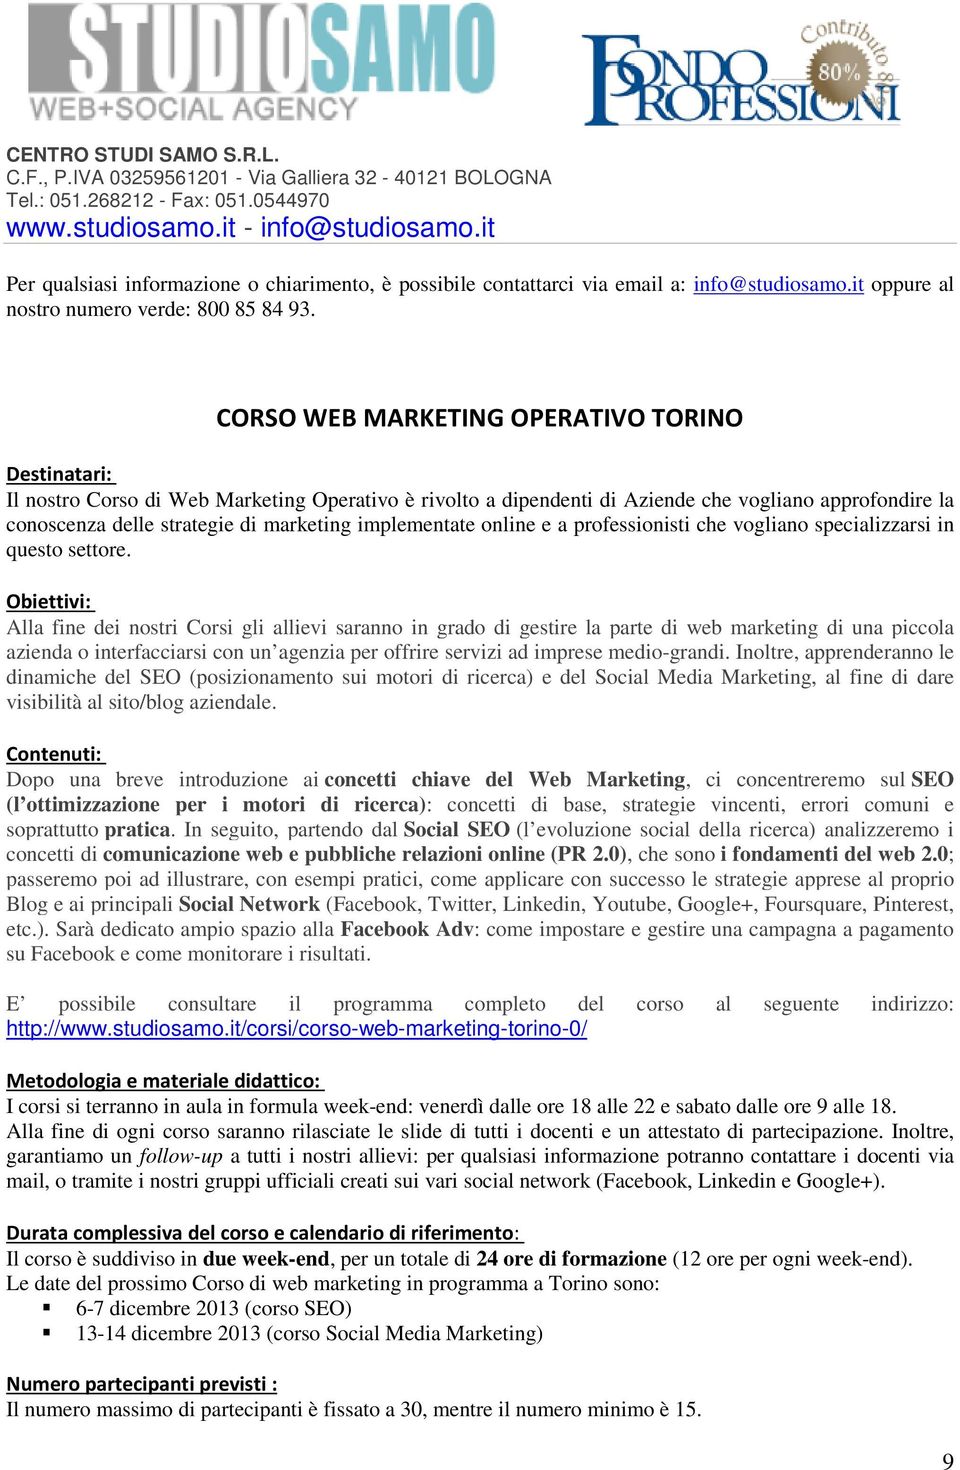 Corso di web marketing in programma a Torino sono: 6-7